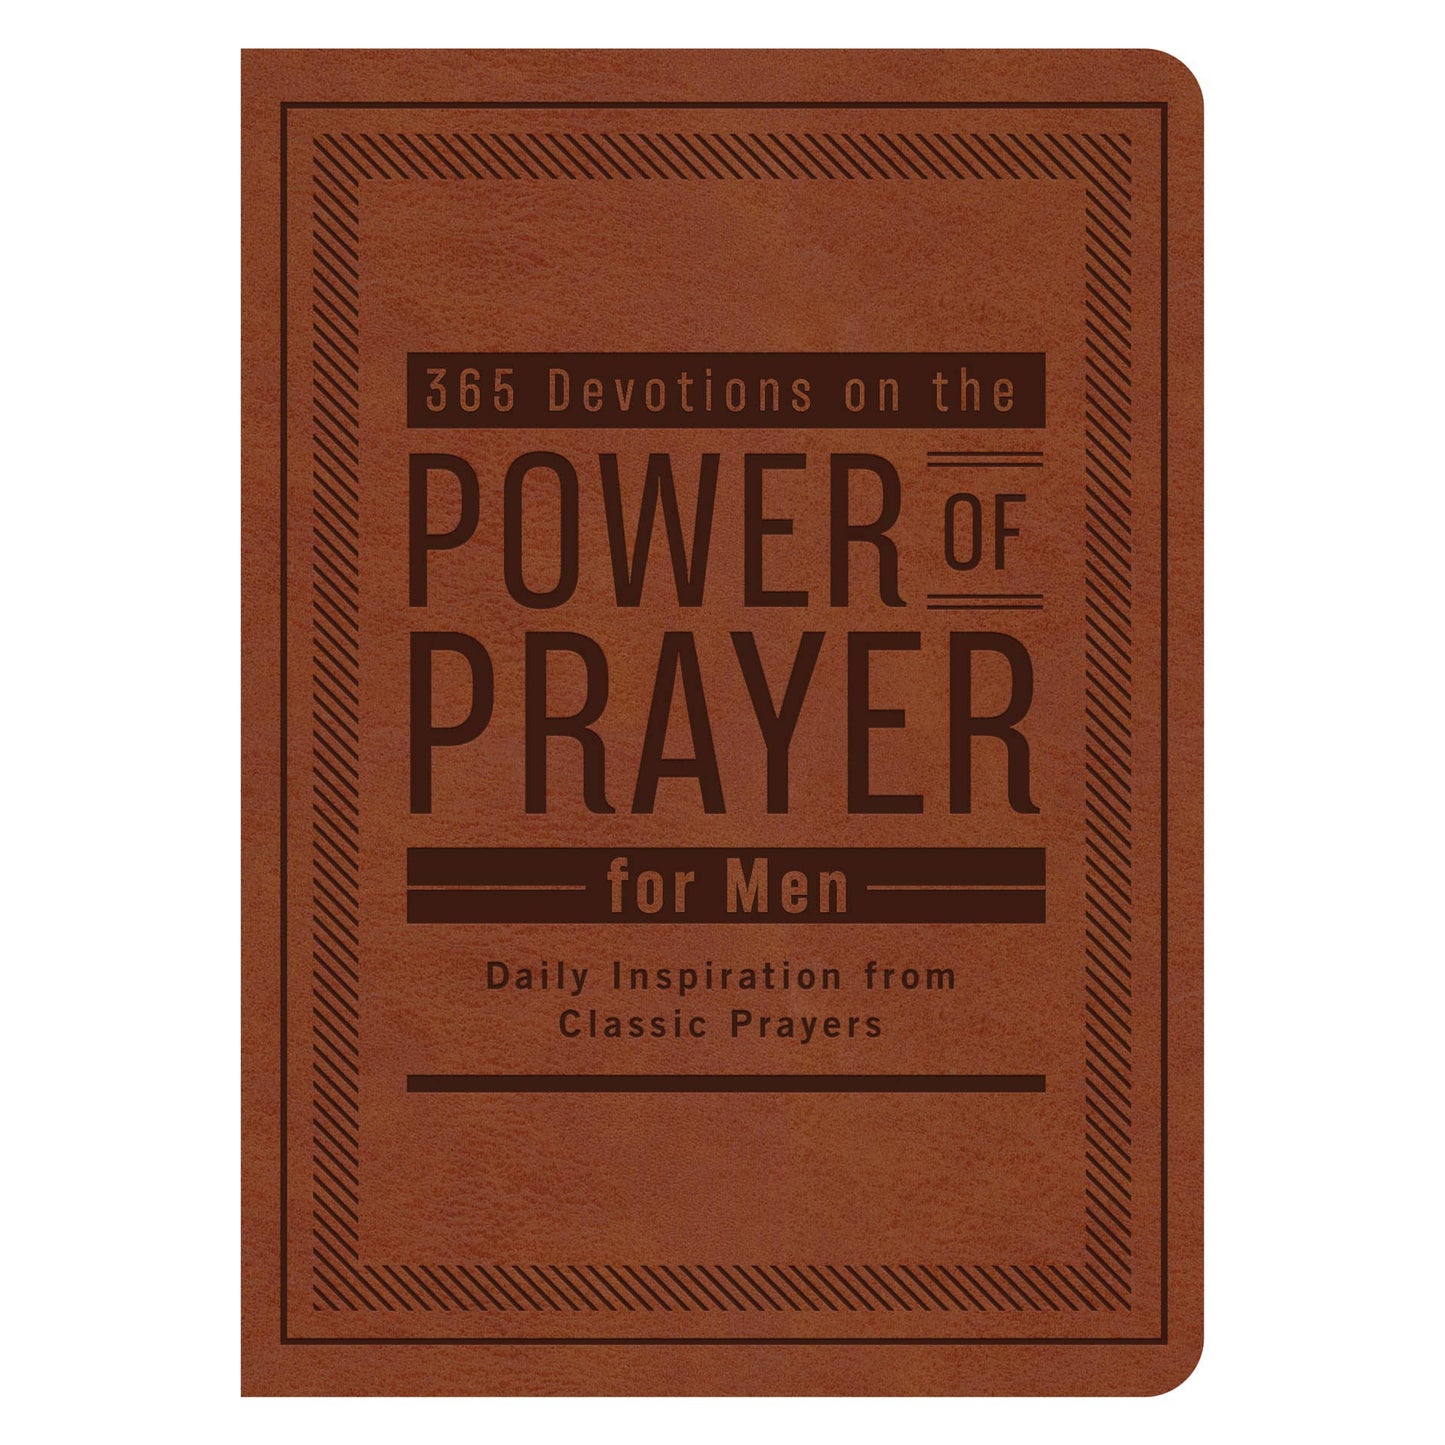 365 Devotions on the Power of Prayer for Men